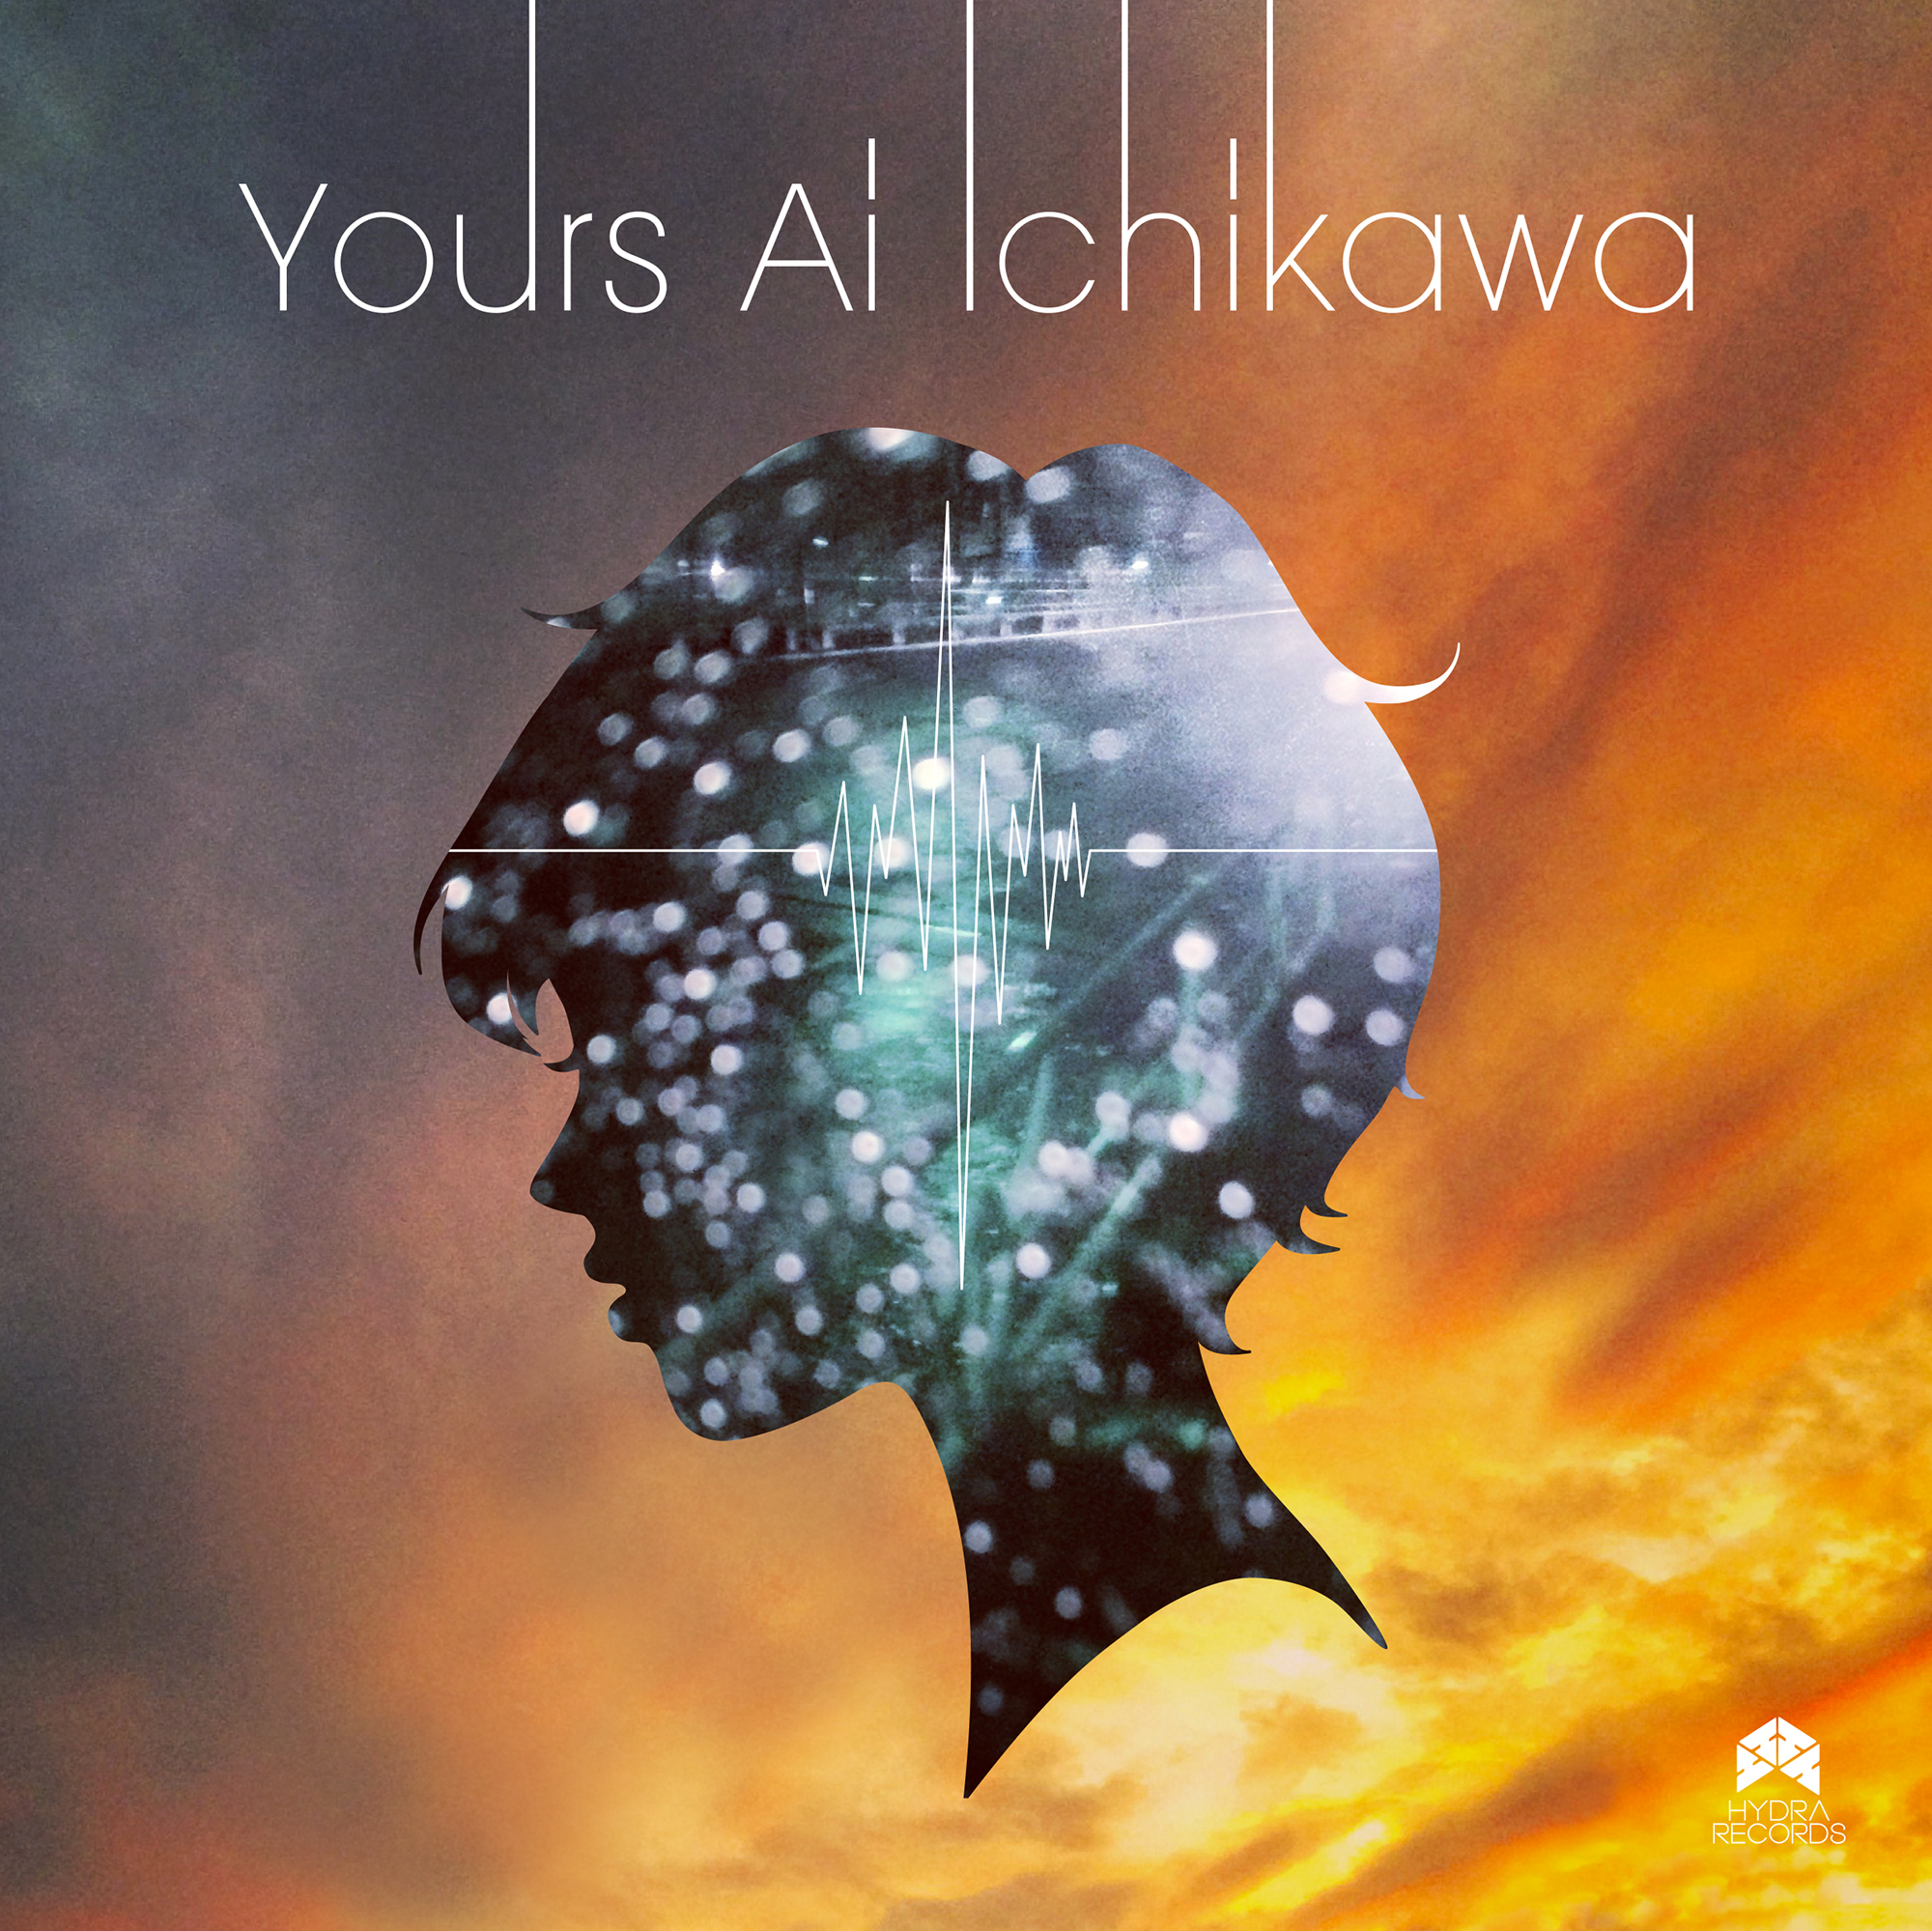 Ai Ichikawa “Vibration / Yours”